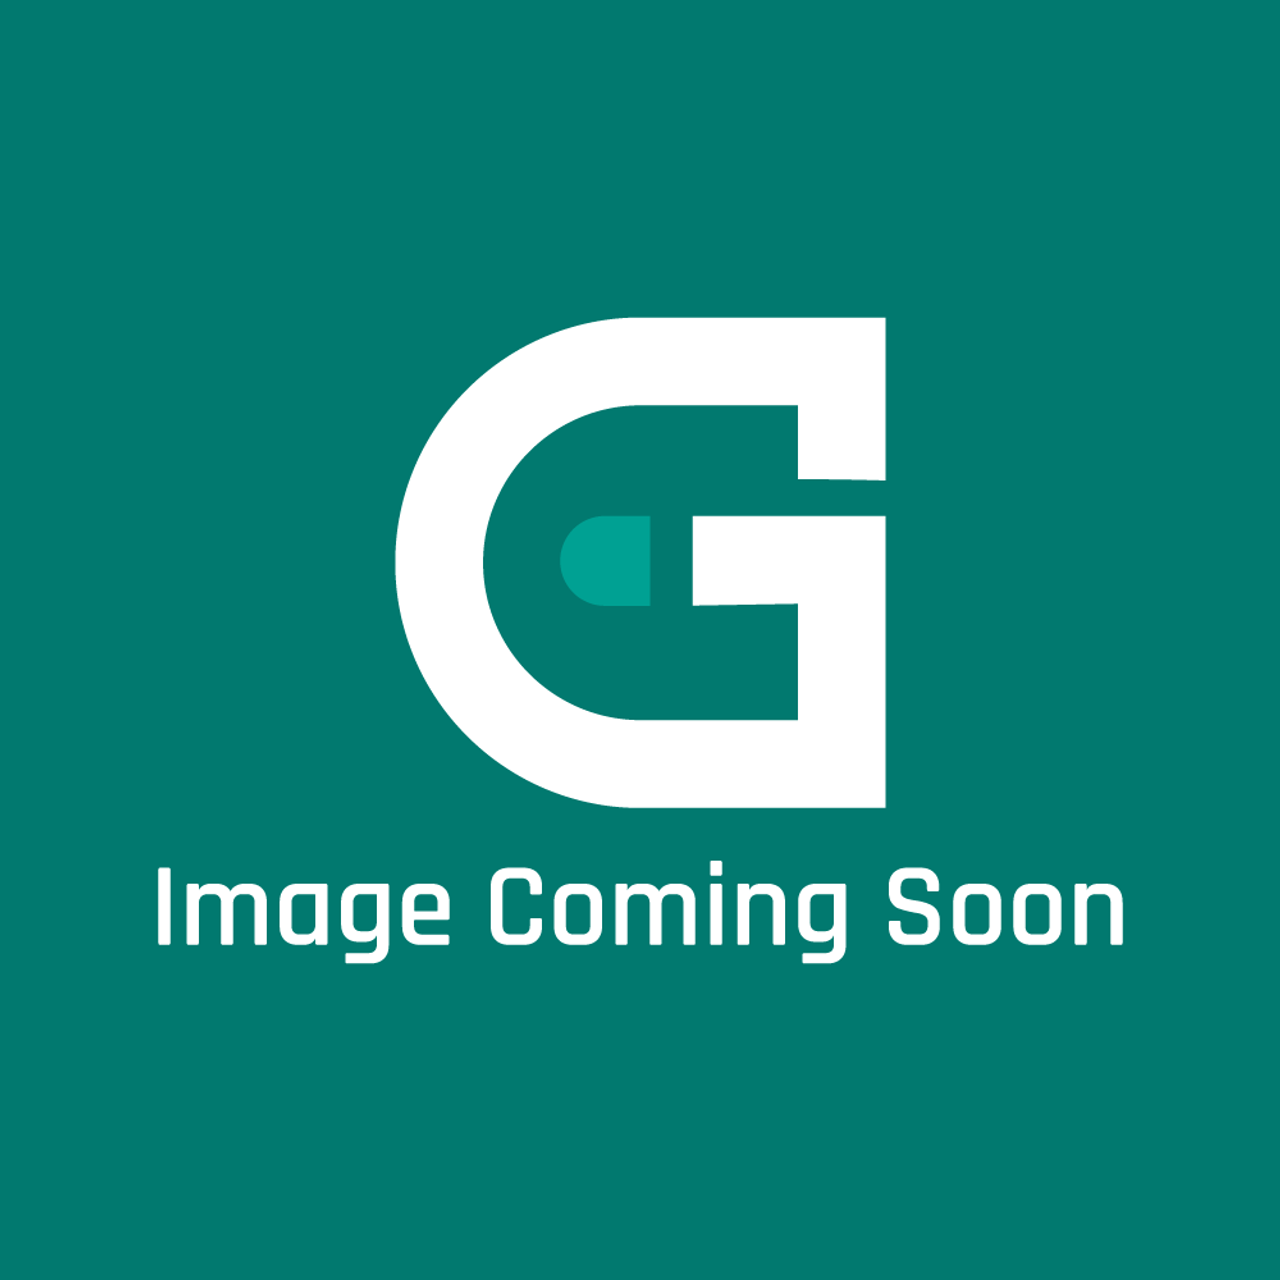 Garland G02641-1-6 - Burner Shield 24 - Image Coming Soon!